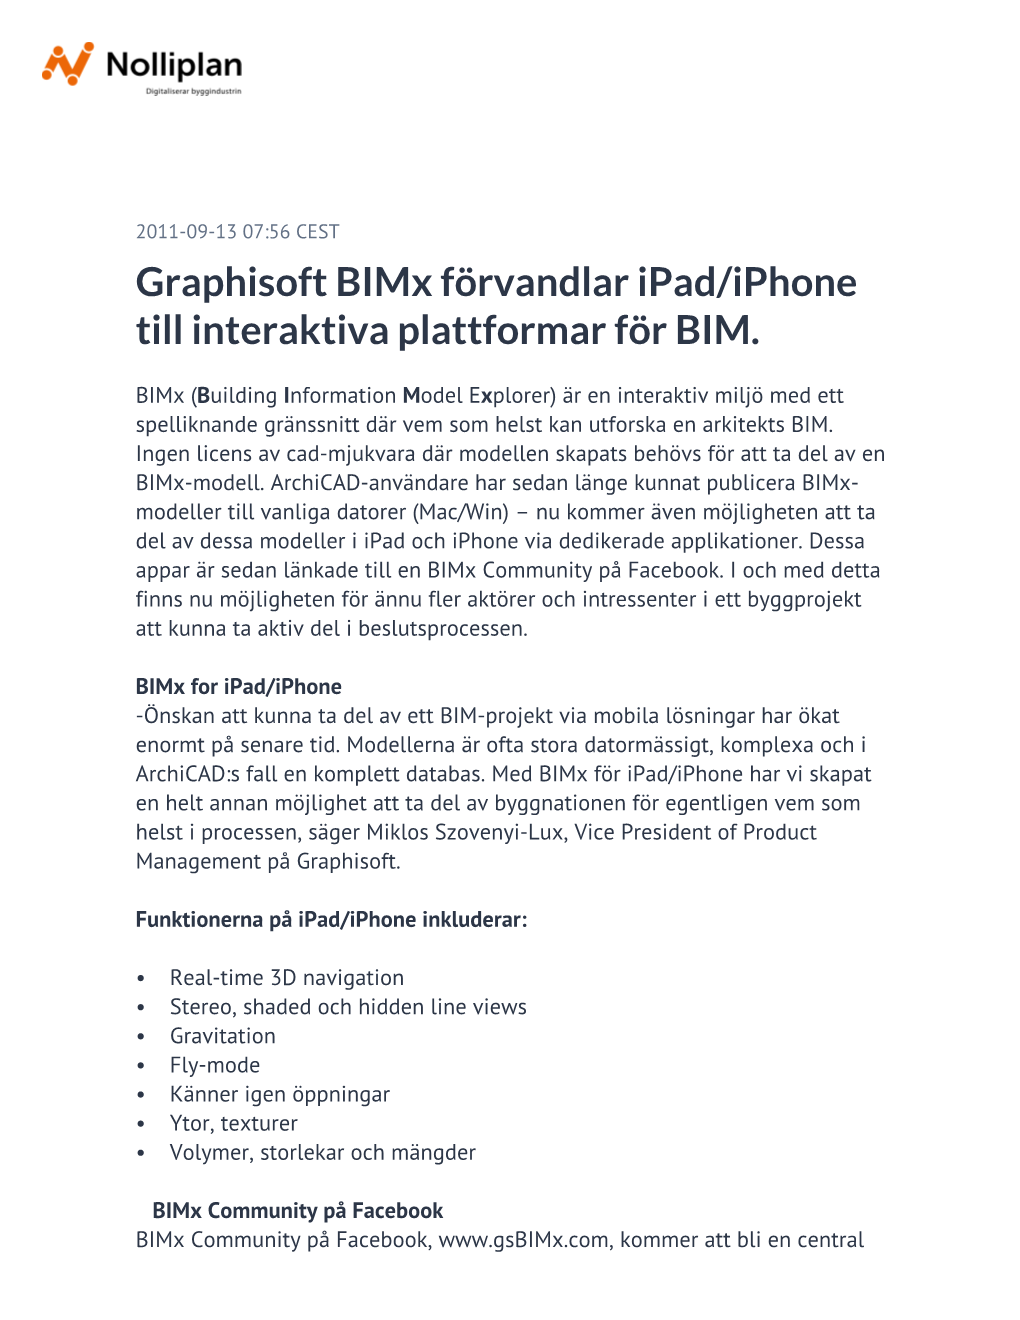 Graphisoft Bimx Förvandlar Ipad/Iphone Till Interaktiva Plattformar För BIM